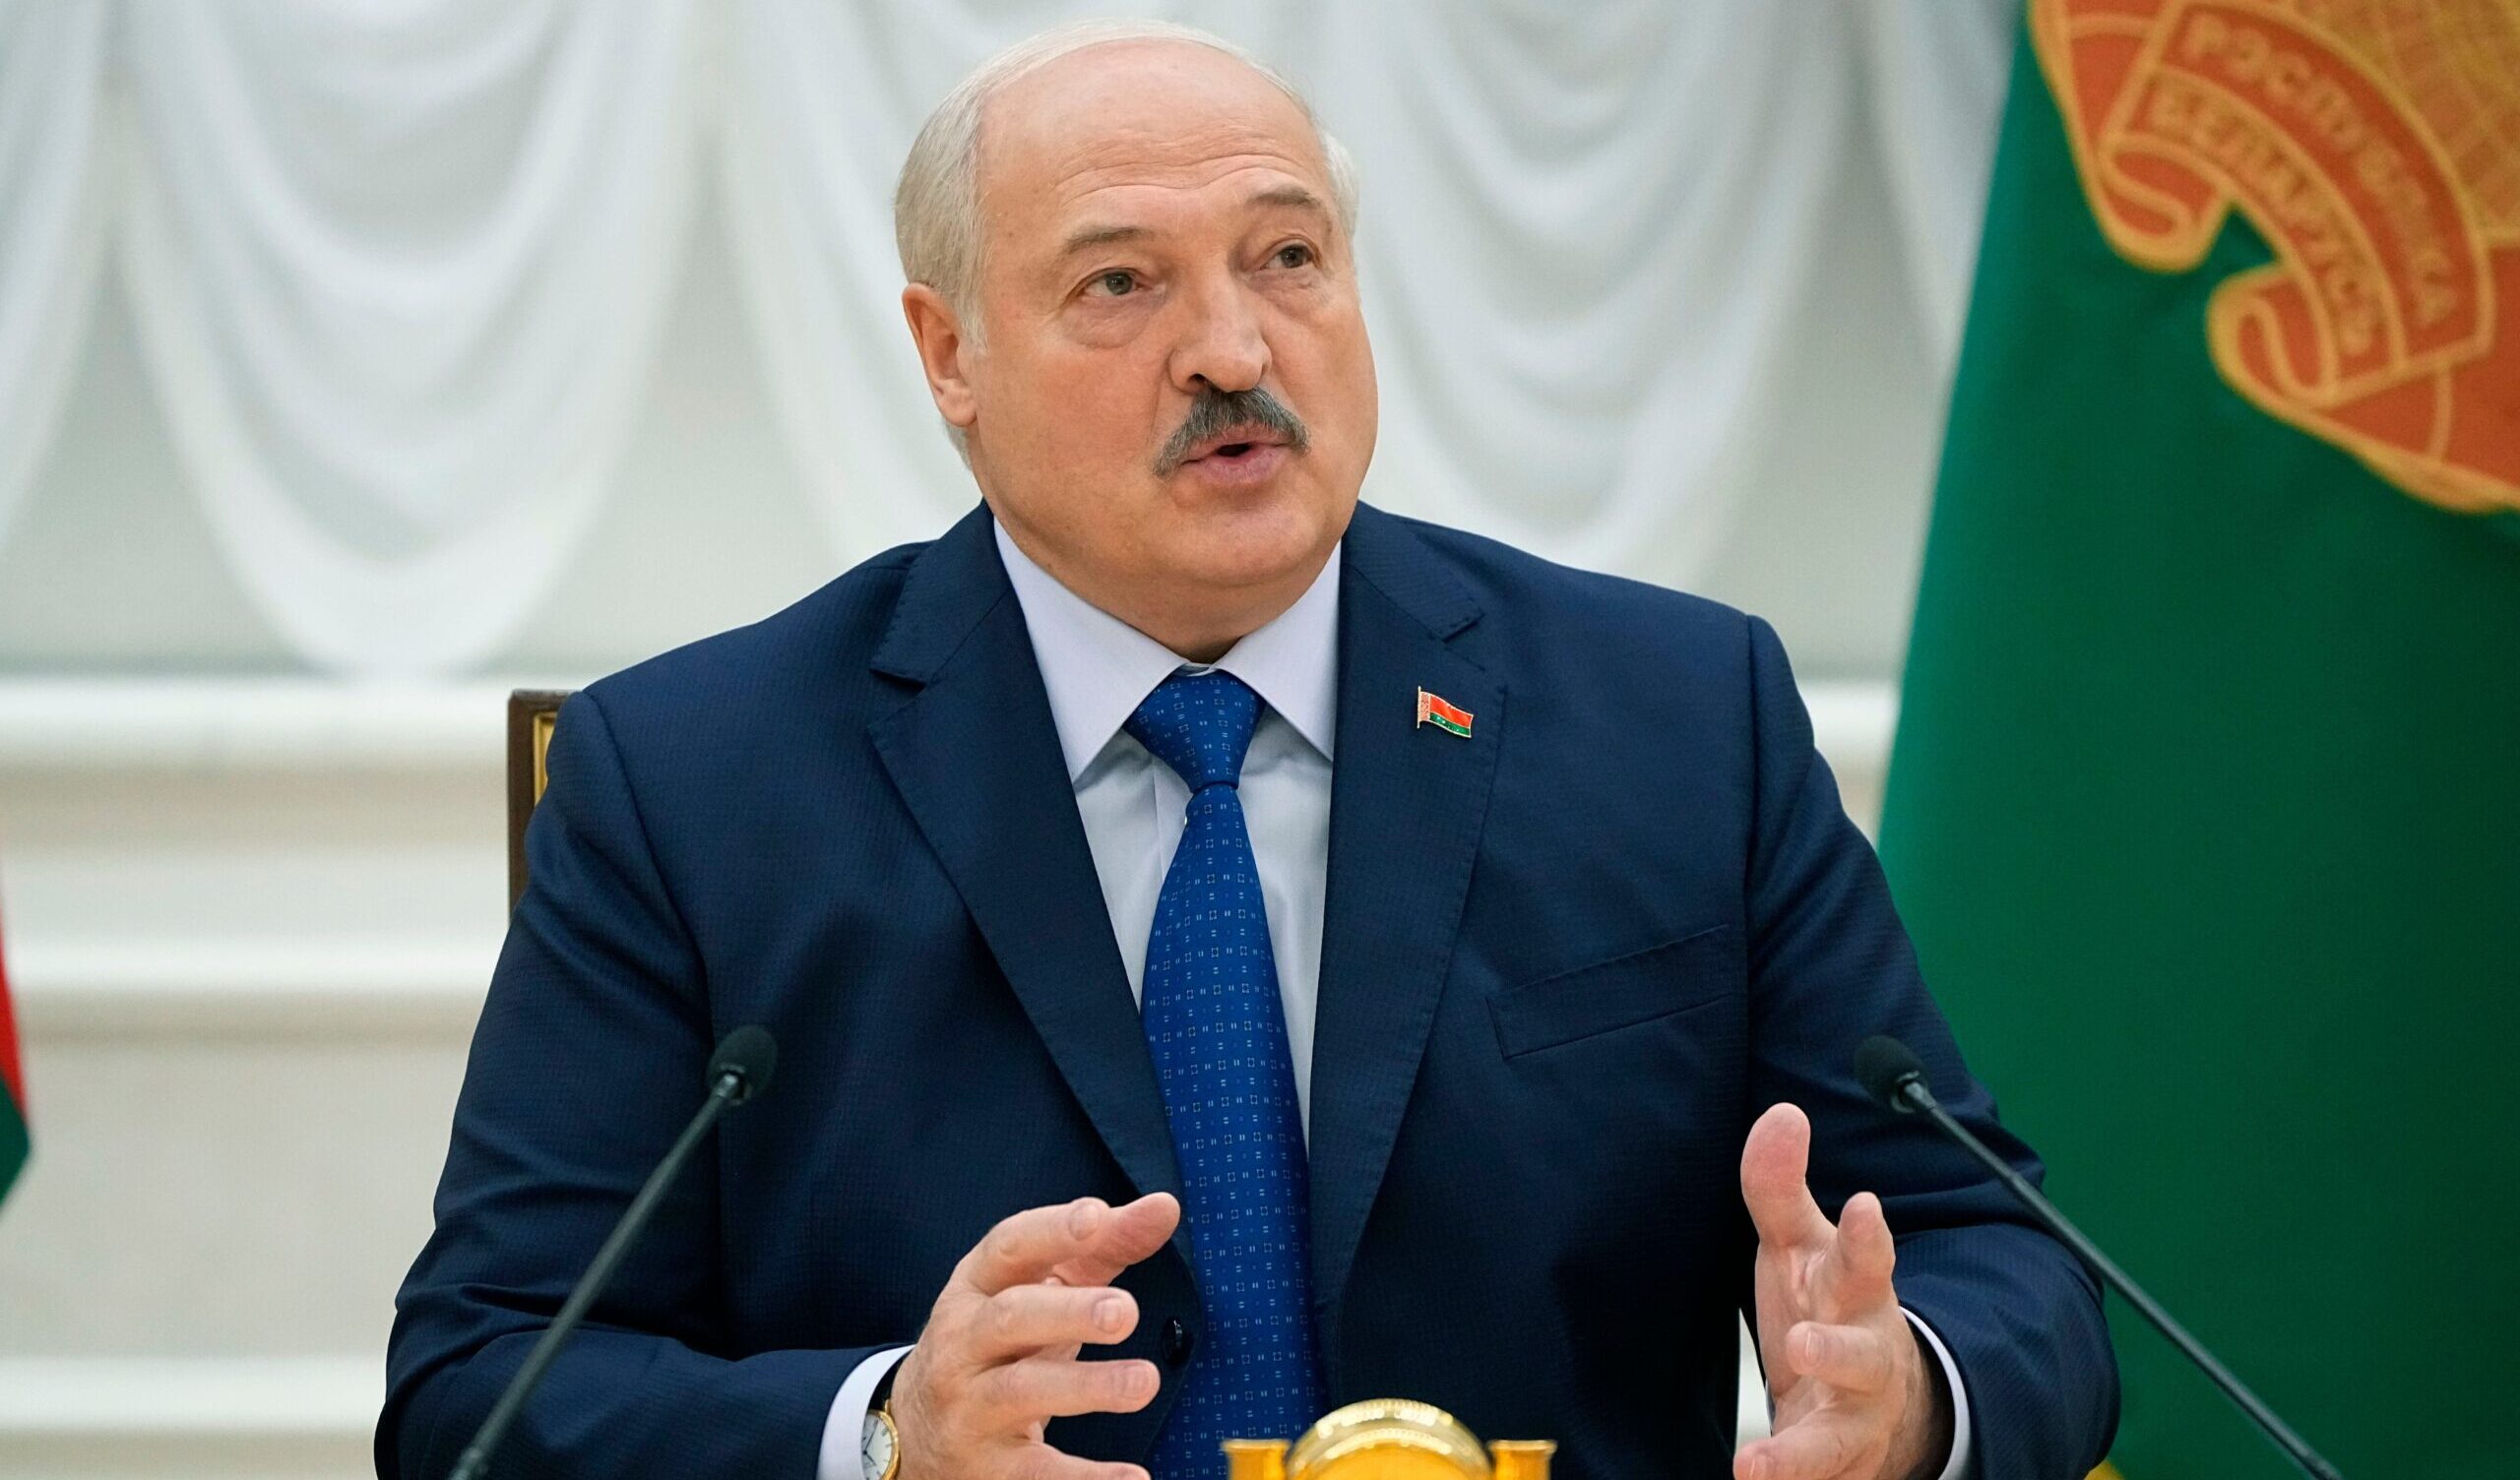 Lukashenko ispeziona i carri armati al confine con la Lituania e annuncia l'uso della armi contro 'ogni provocazione"